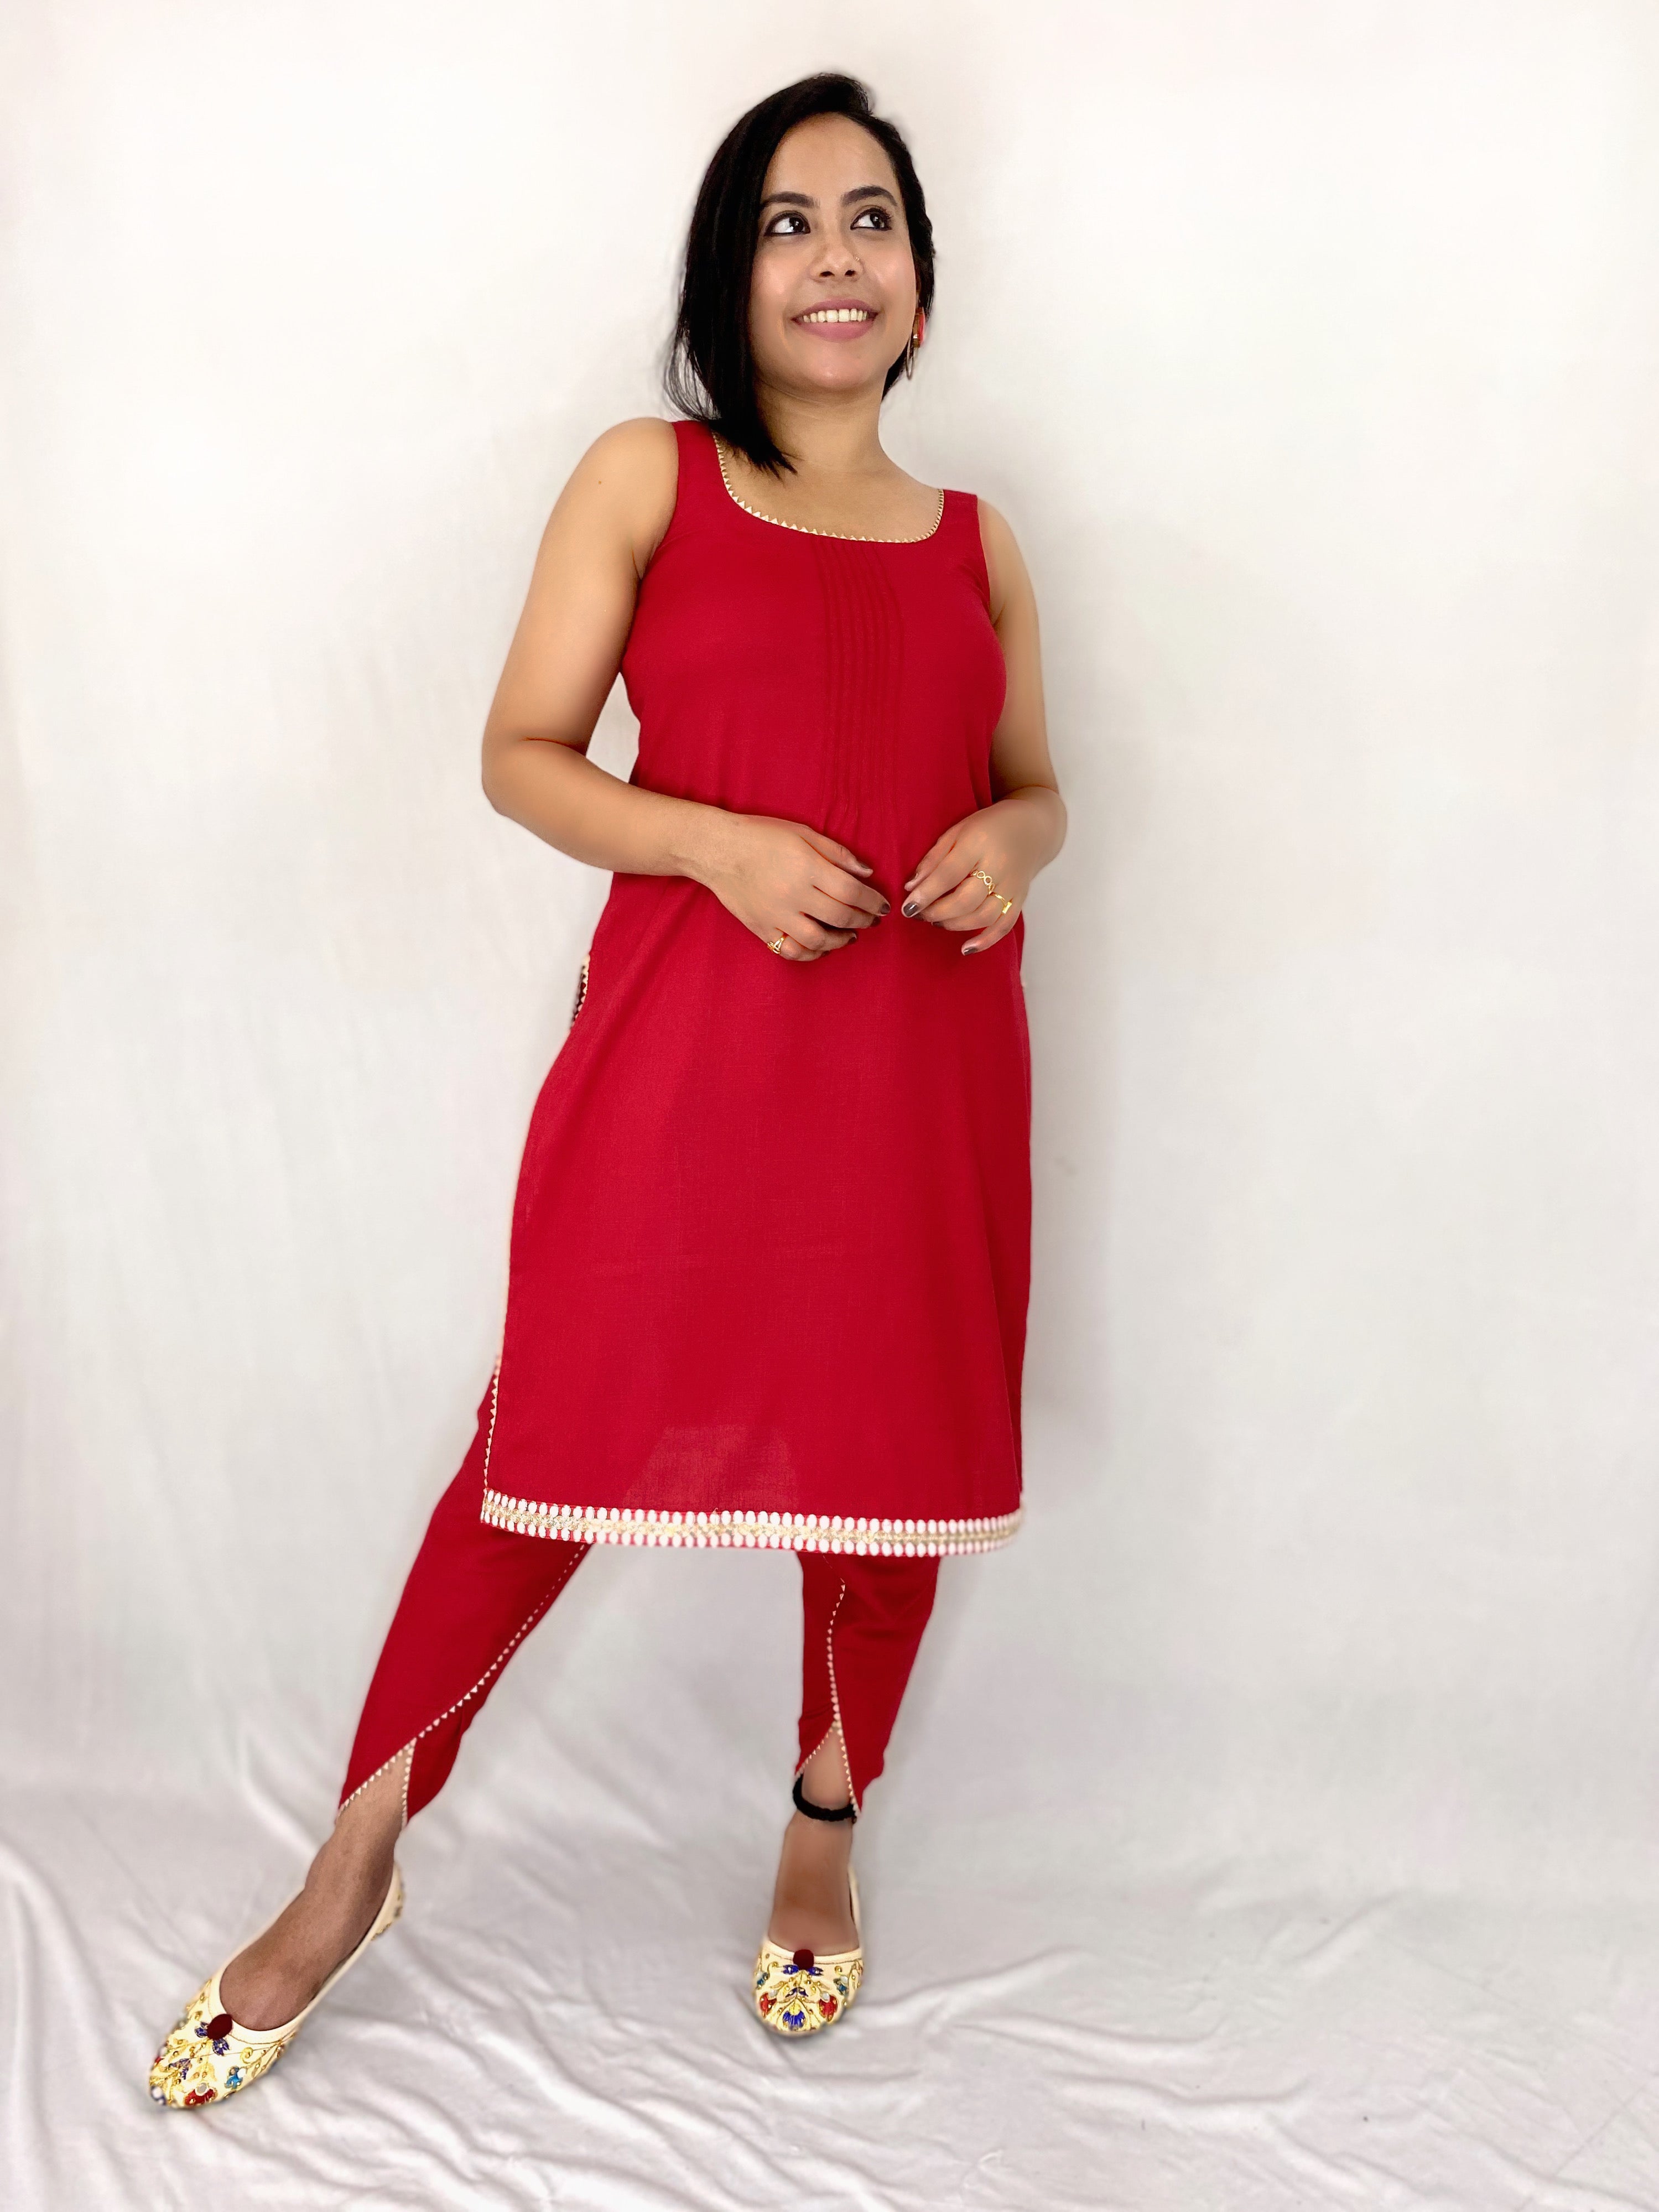 Buy KRISHIV FASHION Hot Fix Fancy Women Cotton Blend Straight Sleeveless  Kurti Kurta (Small, BALCK) at Amazon.in